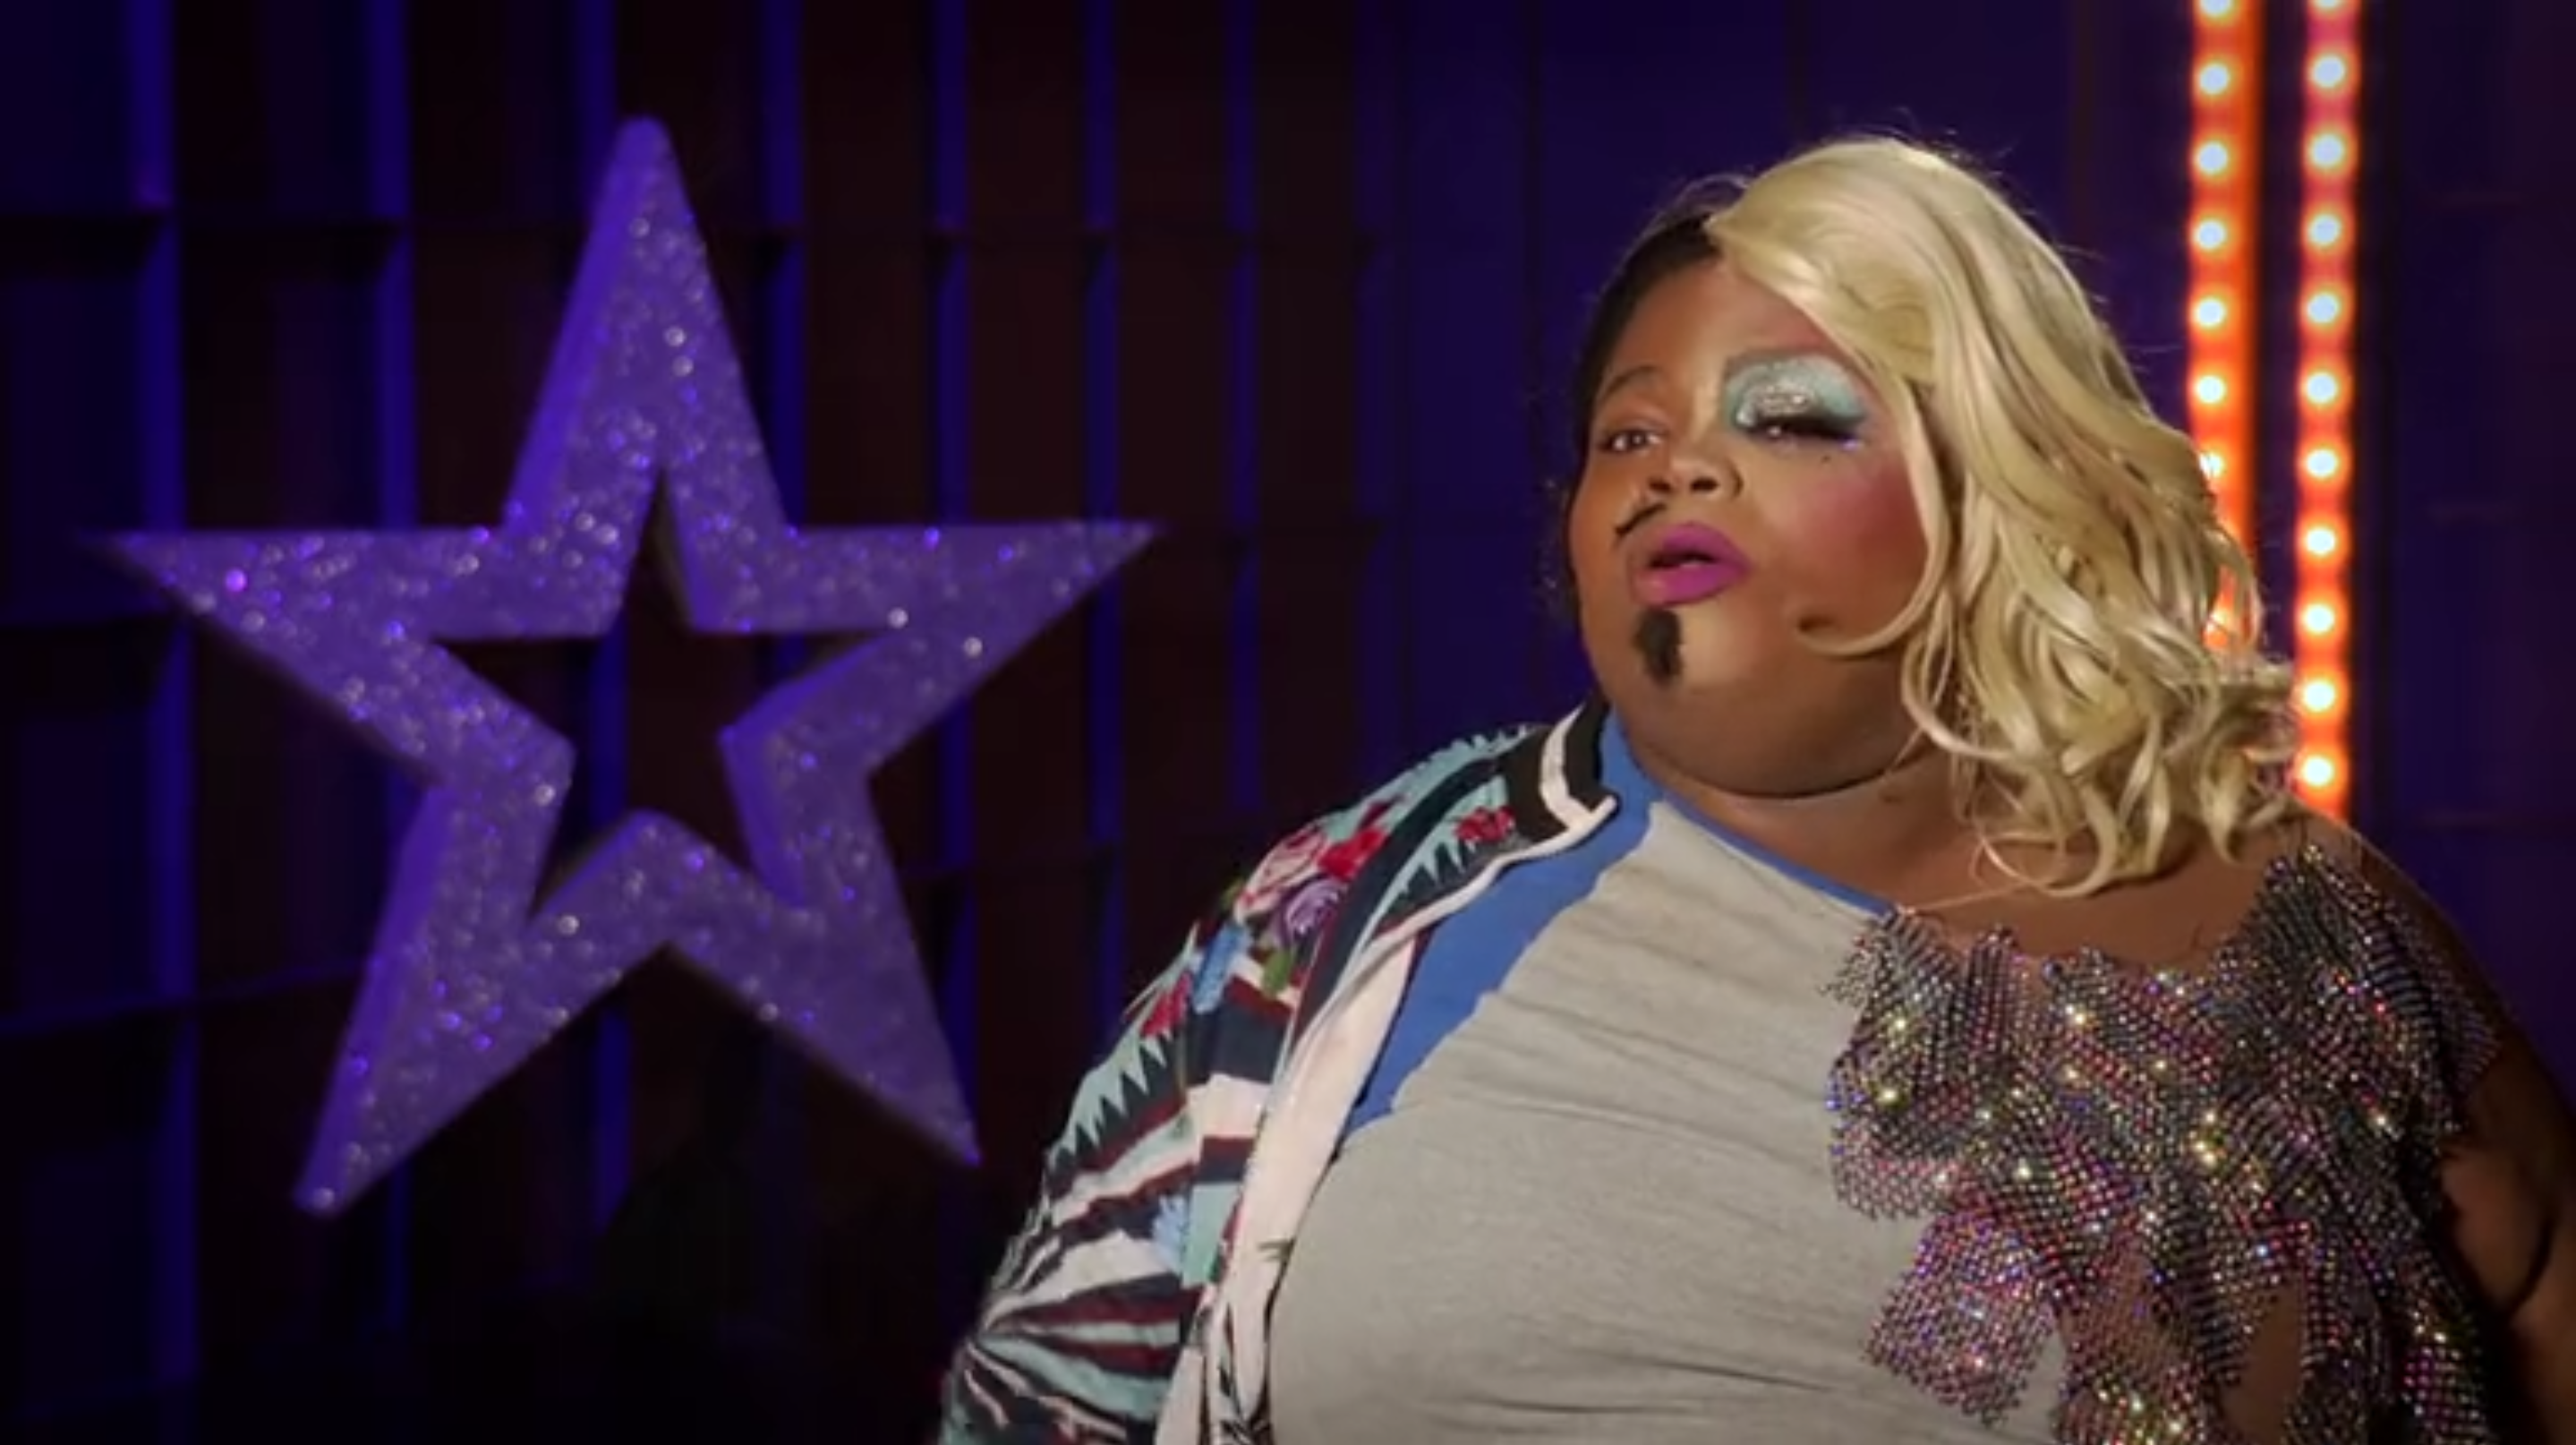 Cena do reality All Stars 6, mostra Silky Nutmeg Ganache dando entrevista. Ela é uma drag queen negra e gorda, que está vestida meio a meio. No lado direito, tem a parte masculina, com bigode e barbicha, e uma roupa azul, enquanto o lado esquerdo é o feminino, com vestido e peruca loira.